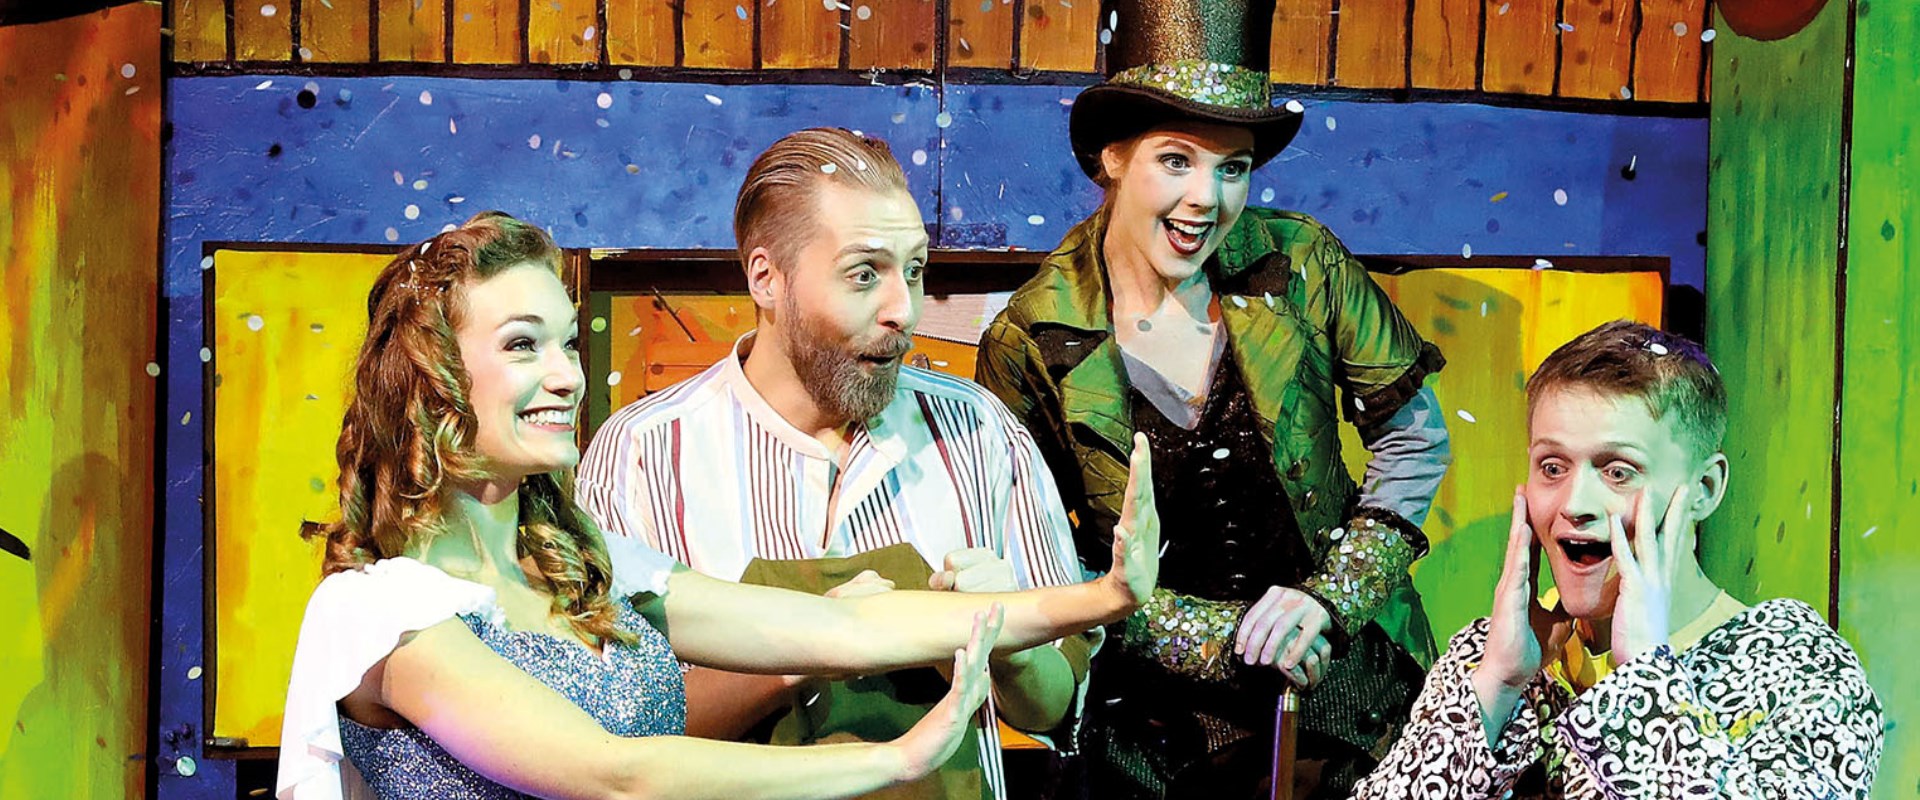 Pinocchio und seine Freunde erleben viele Abenteuer. Die Schauspieler lachen gemeinsam auf der Bühne.